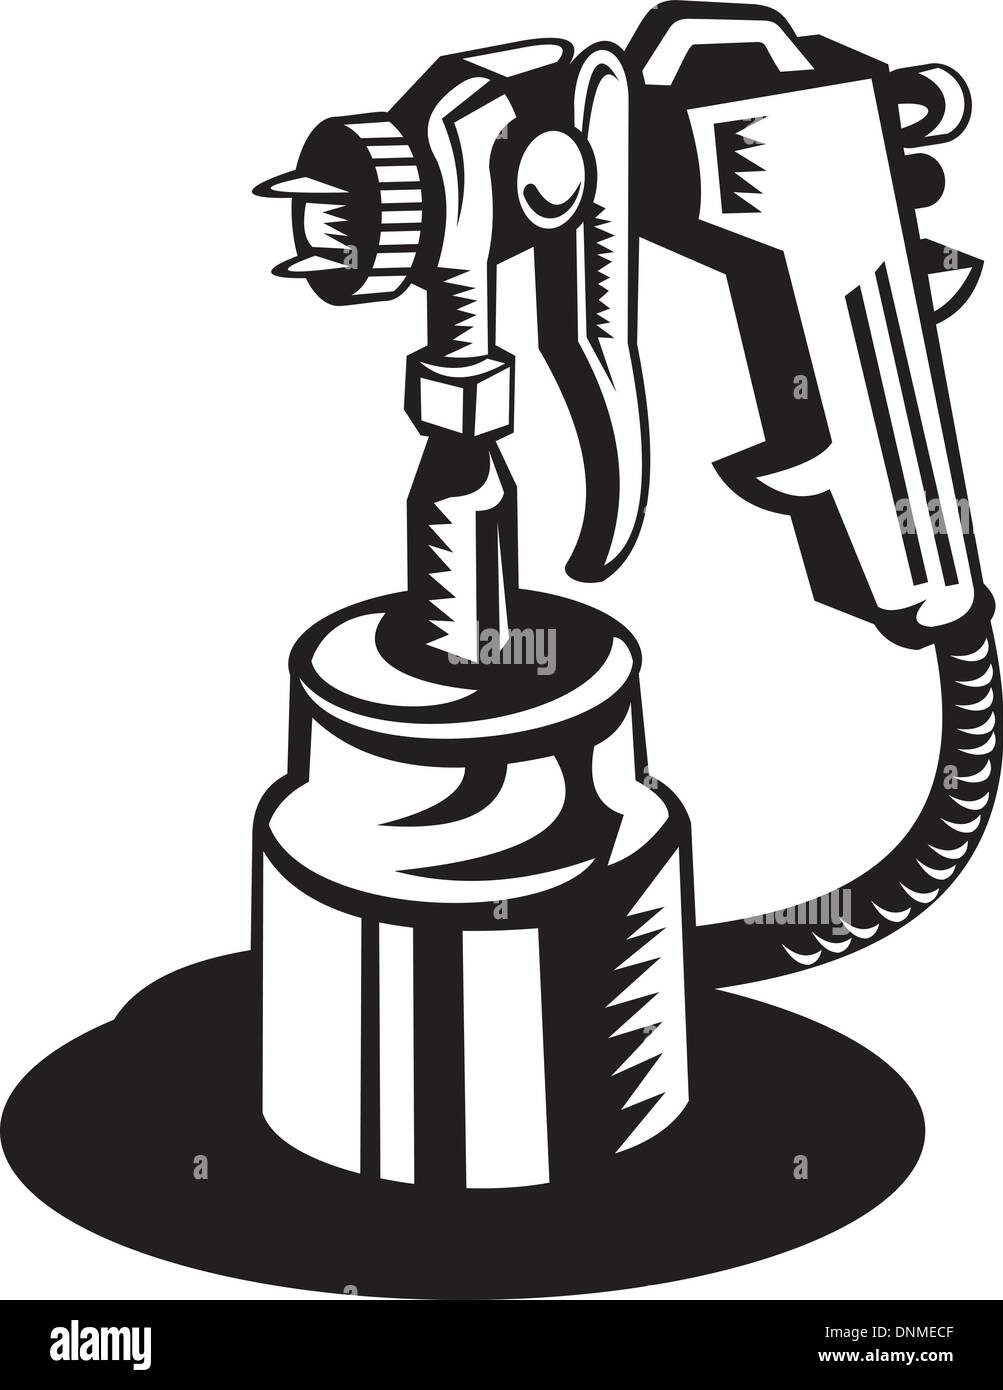 Illustrazione di una pistola a spruzzo visto da un angolo alto in bianco e nero Illustrazione Vettoriale